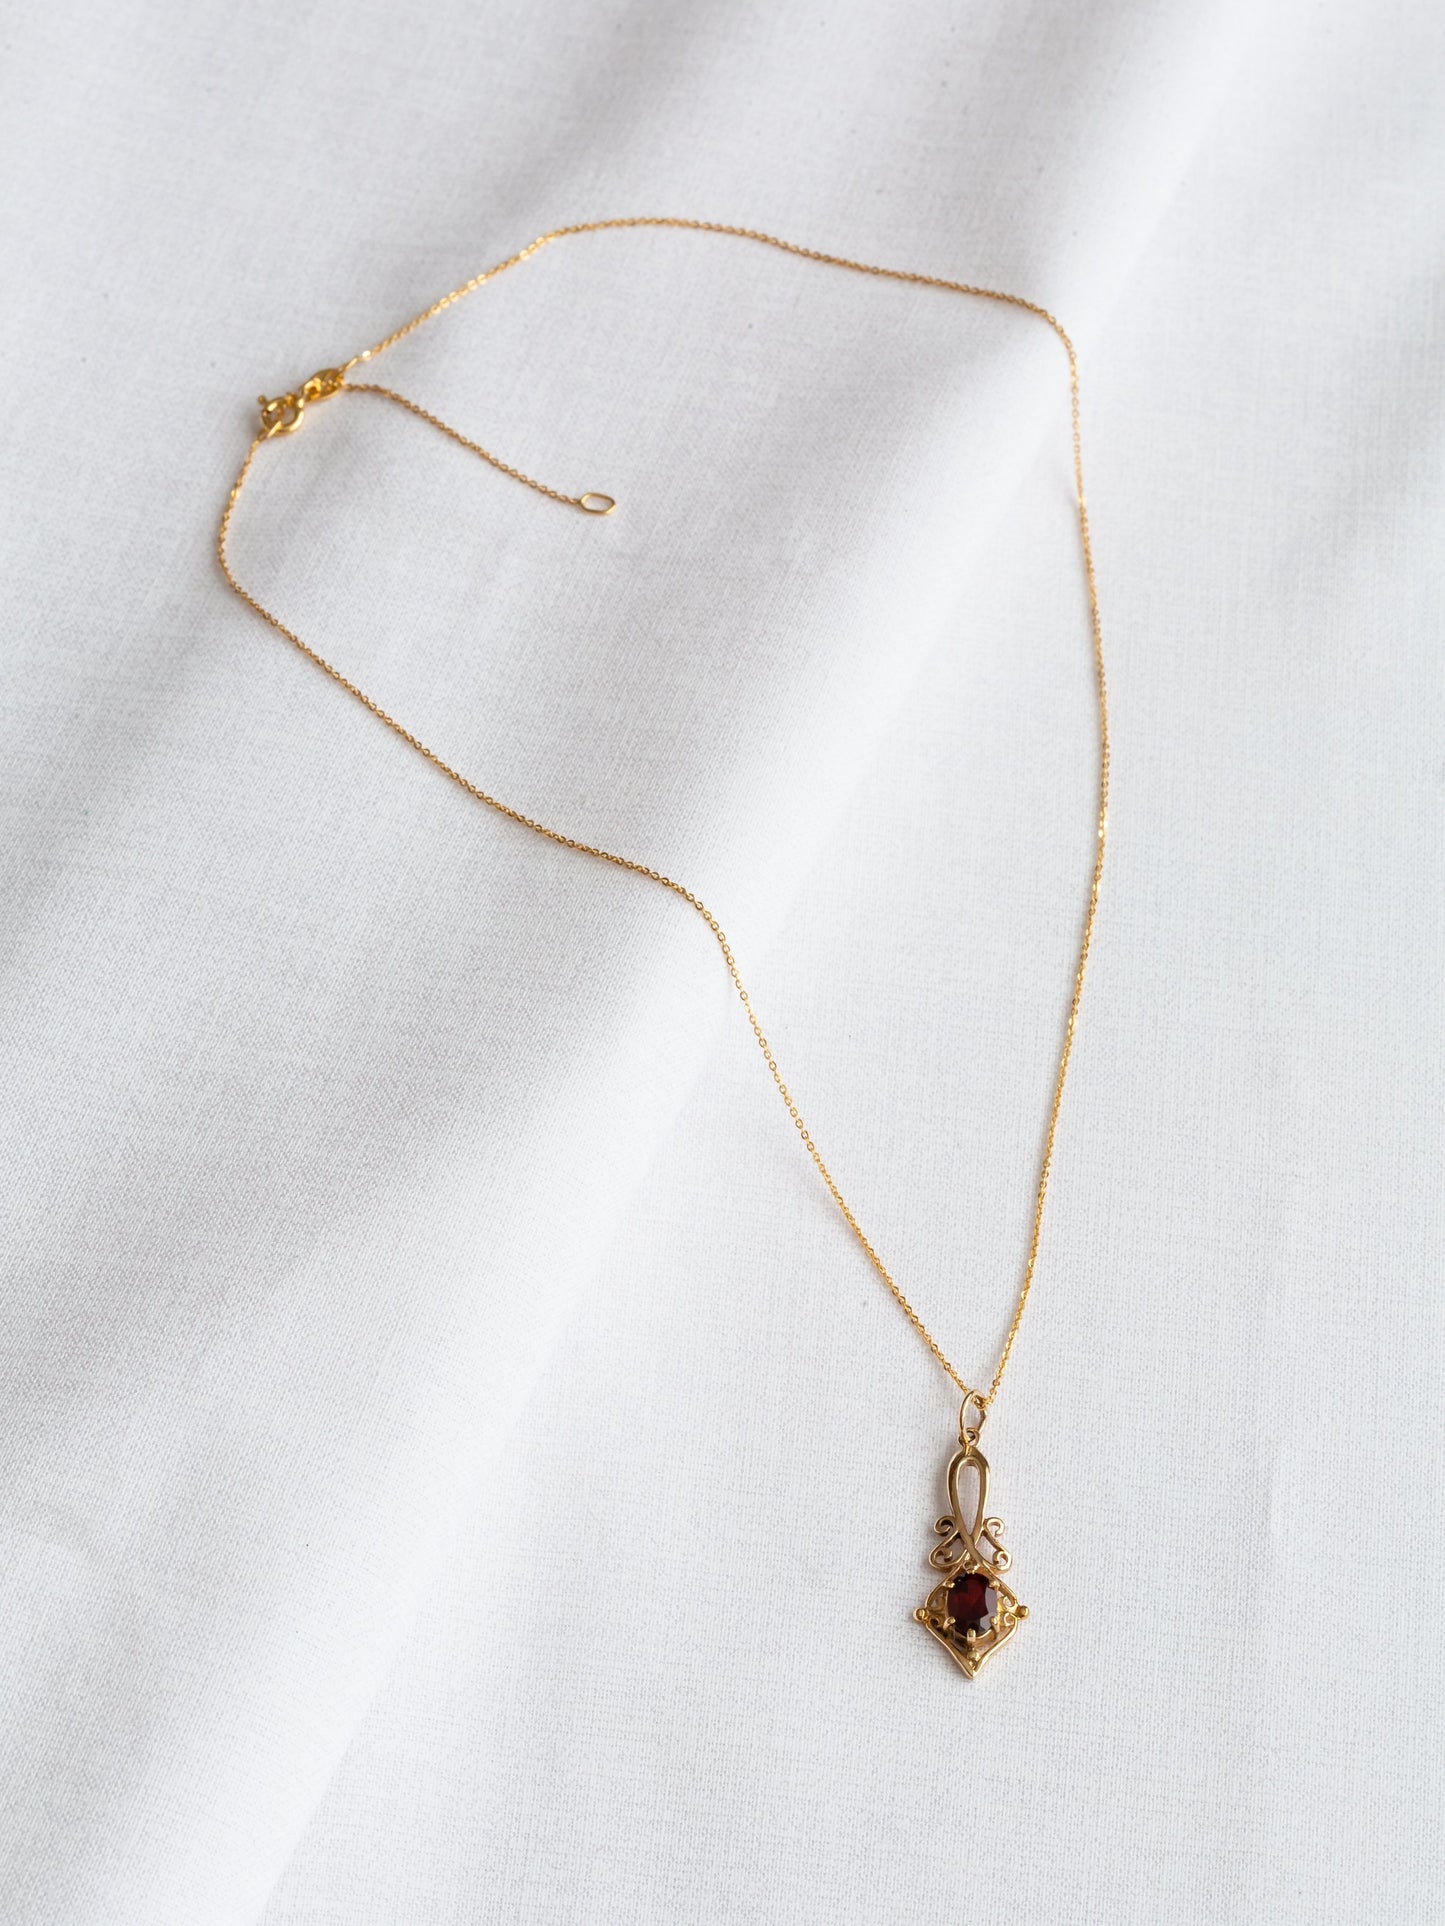 Vintage 9ct Gold Ornate Garnet Pendant Necklace